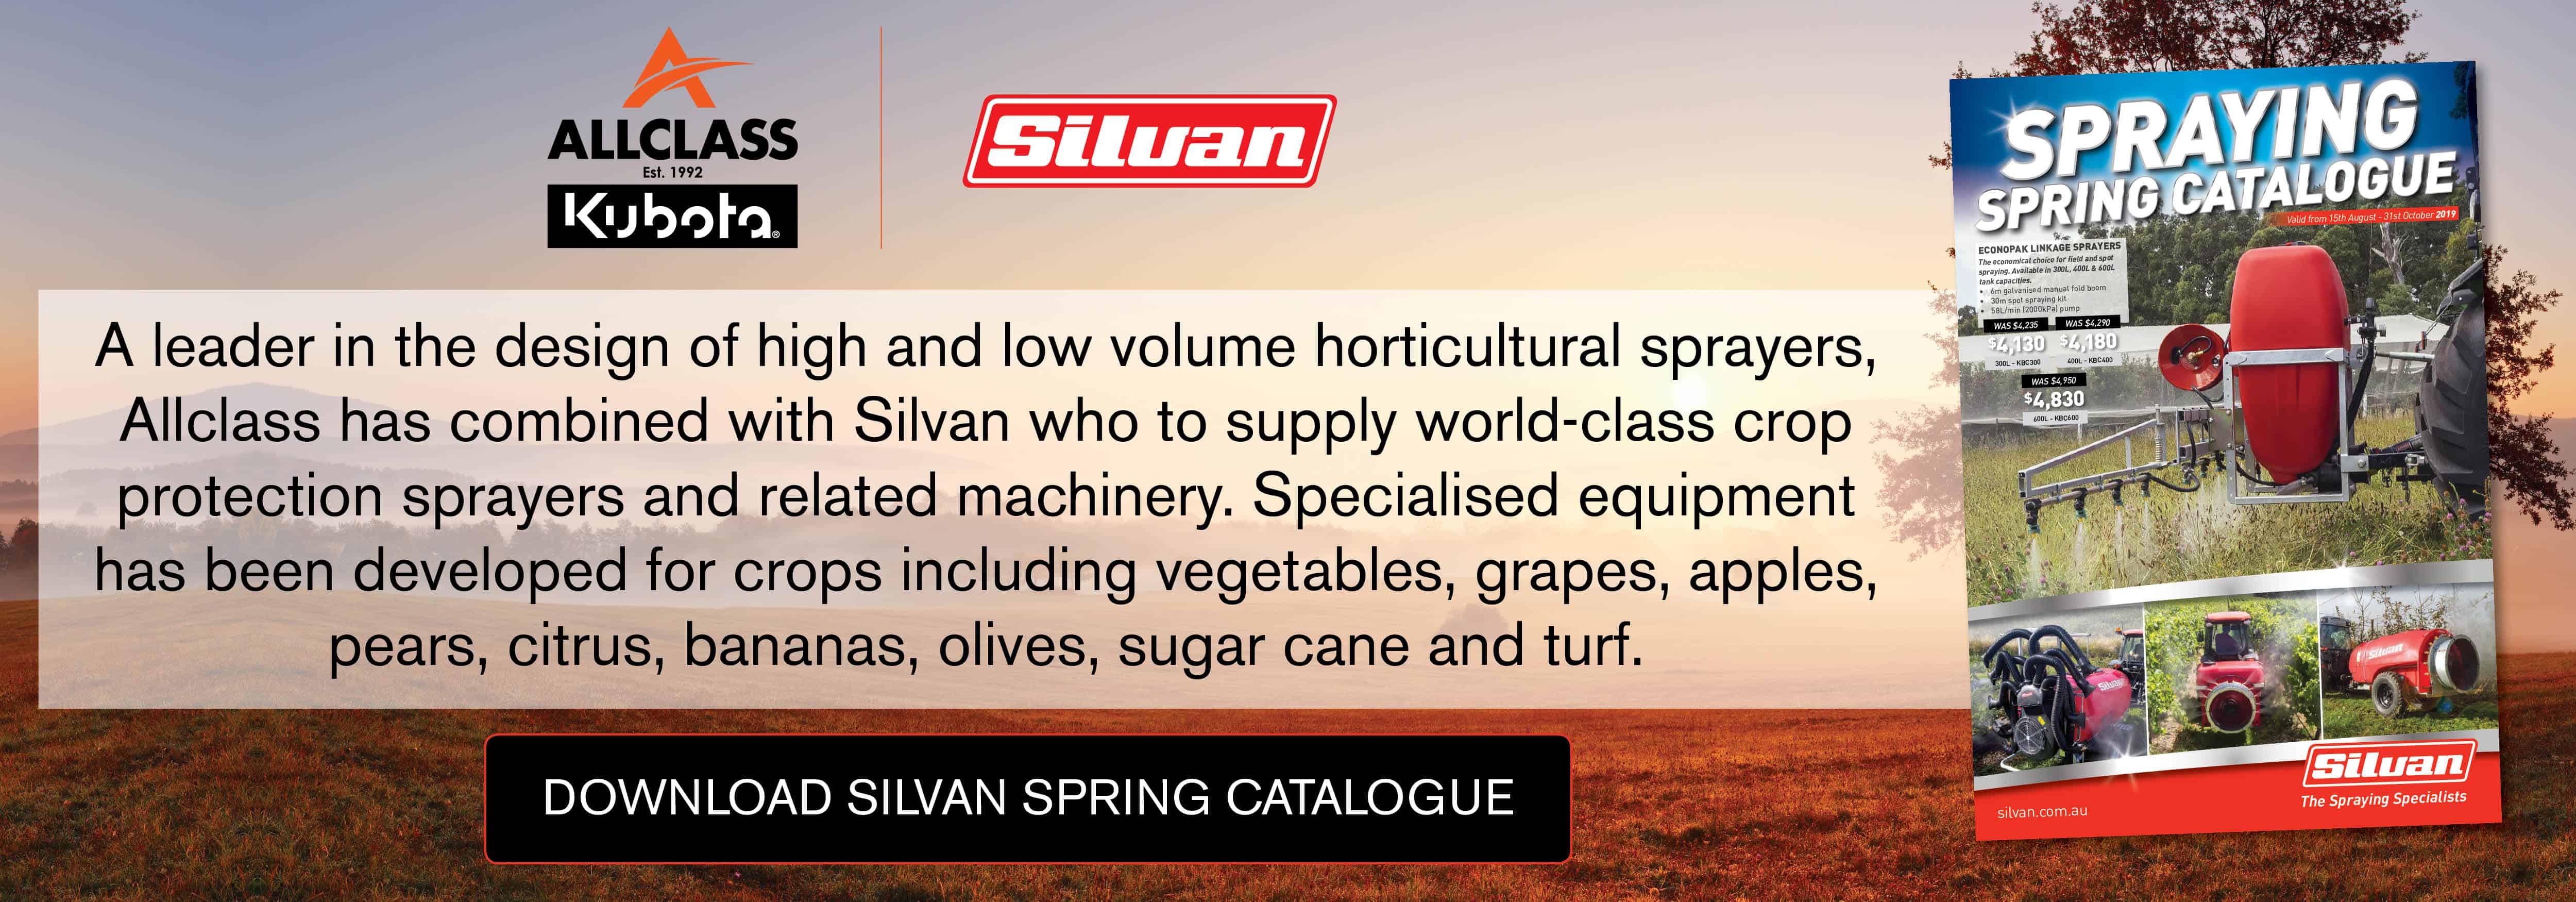 Silvan Spring Catalogue